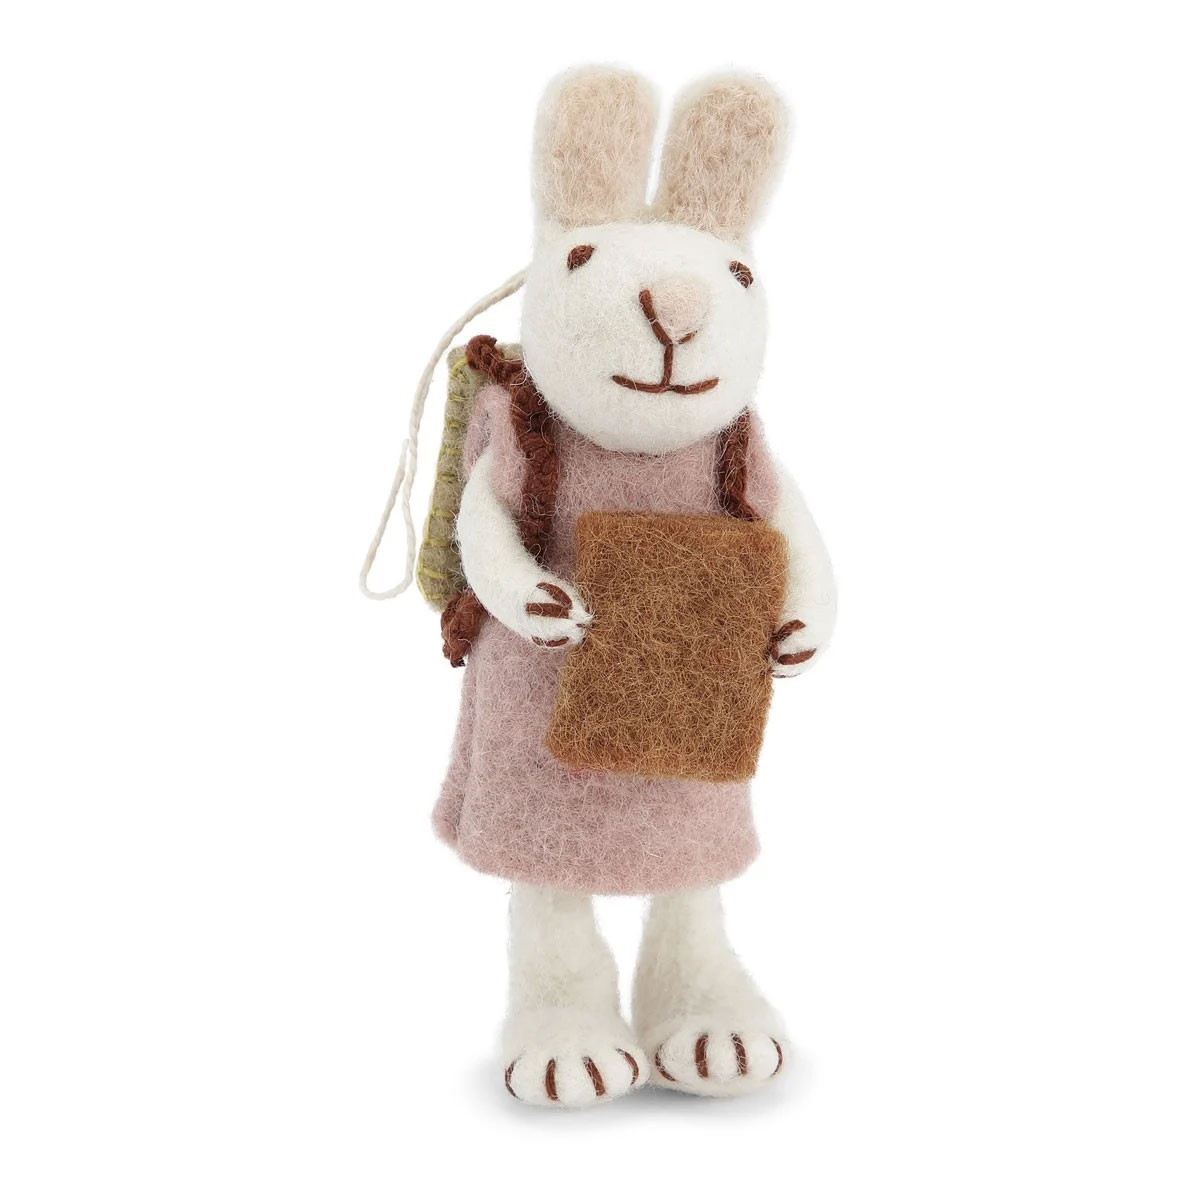 Gry & Sif Hase weiß mit Kleid und Buch, aus Filz, ca. 13 cm